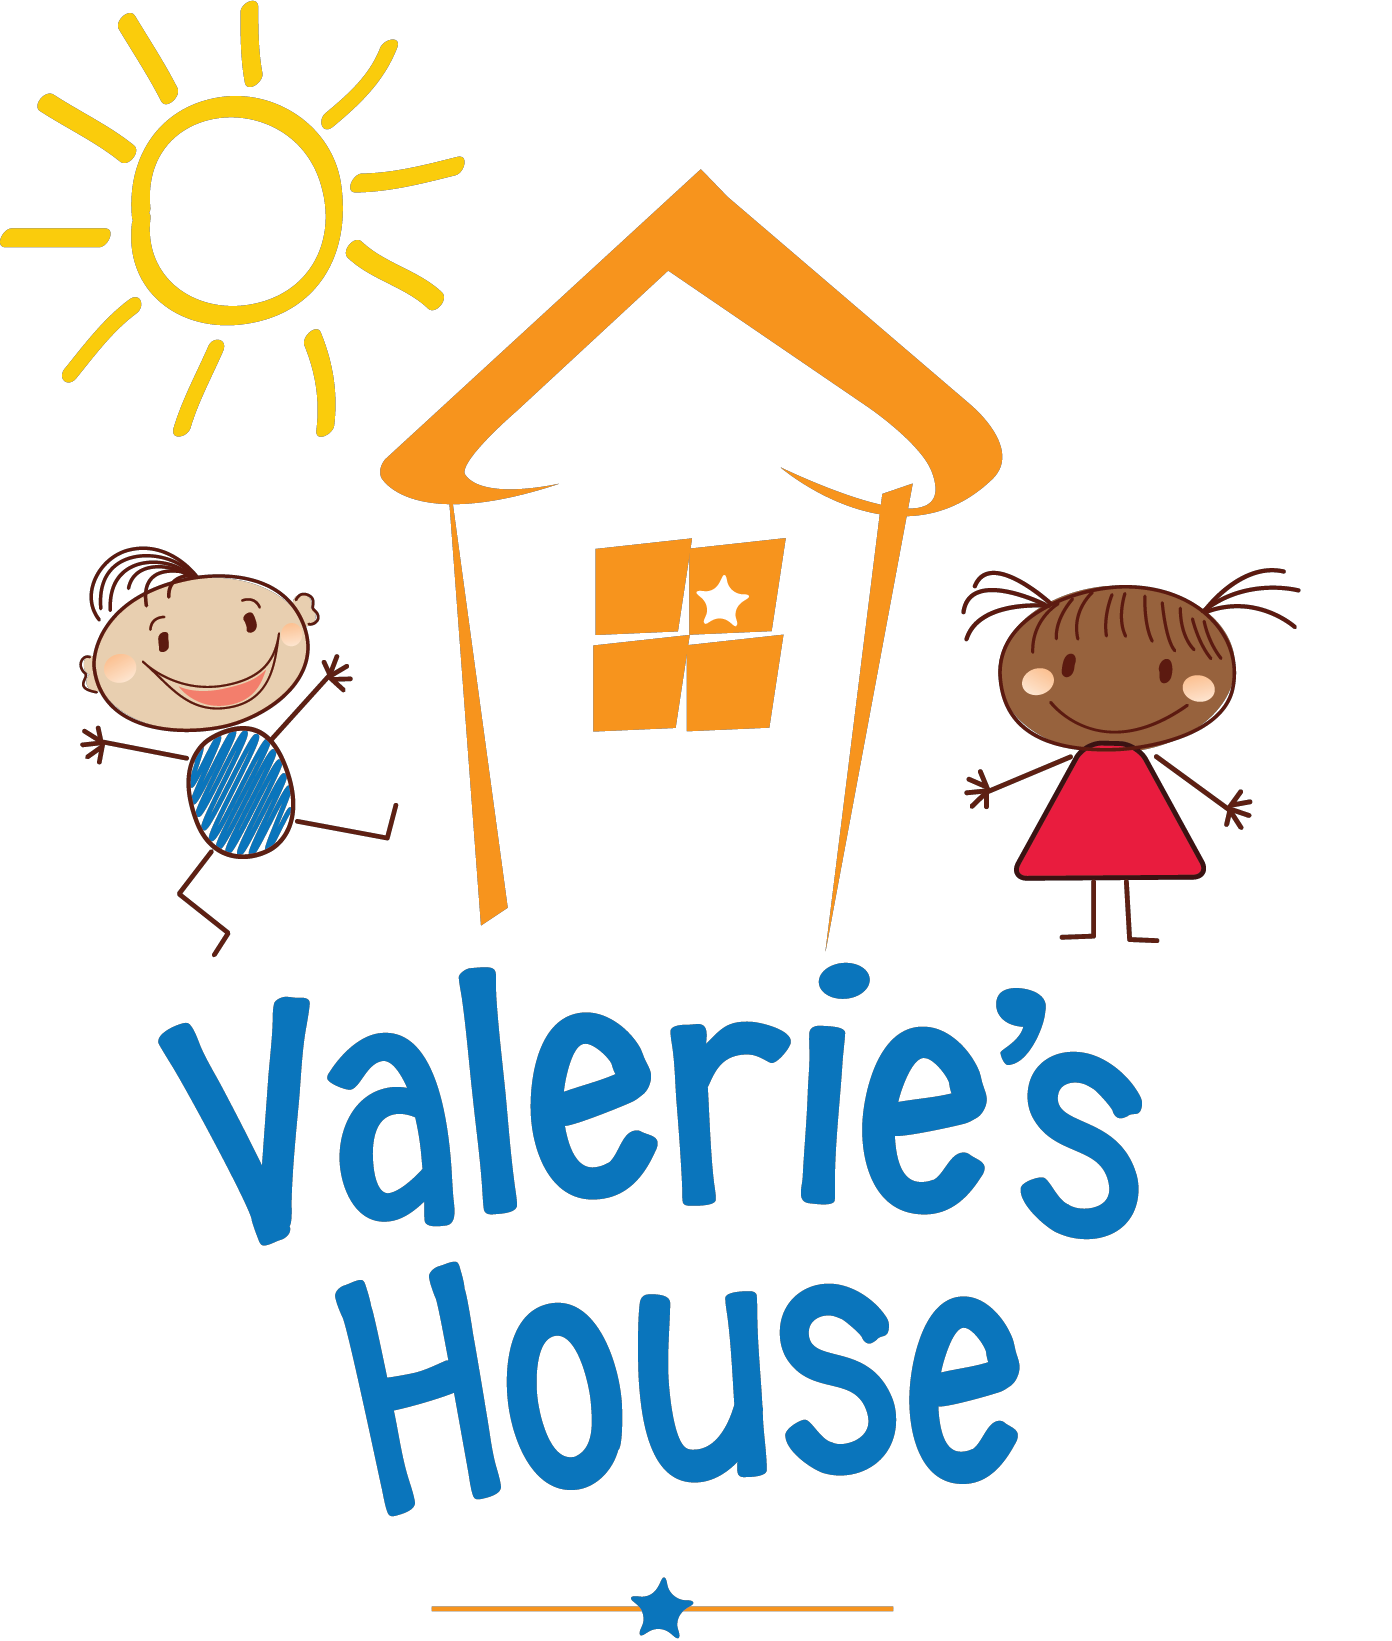 Valerie's House